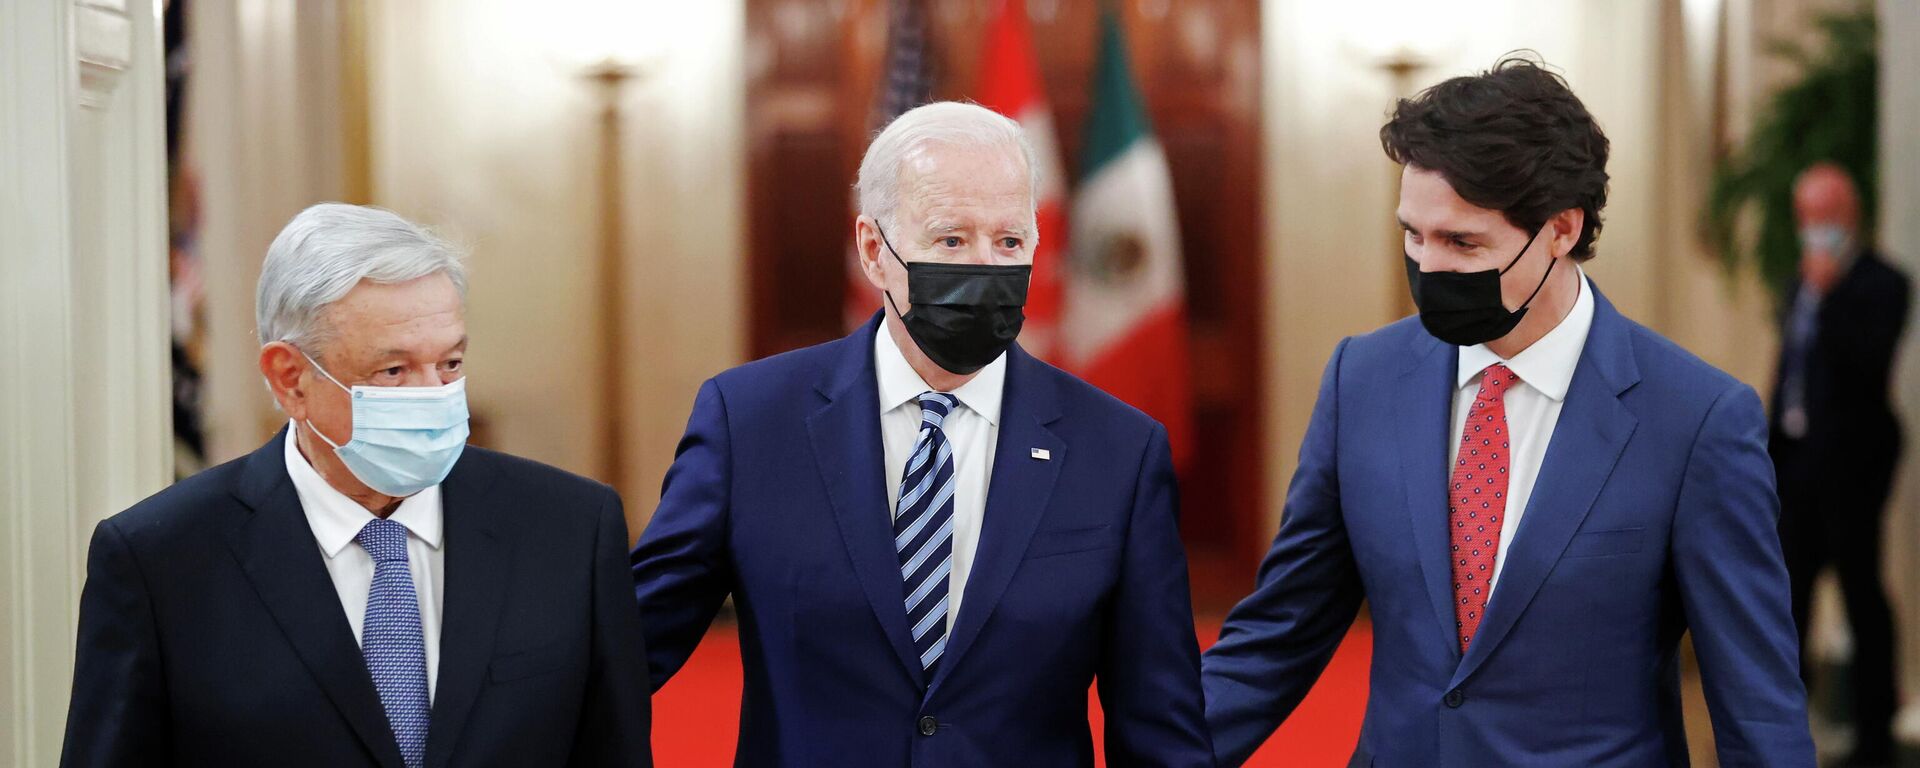 Presidente de México, Andrés Manuel Lopez Obrador, presidente de EEUU, Joe Biden, y primer ministro de Canadá, Justin Trudeau - Sputnik Mundo, 1920, 20.11.2021